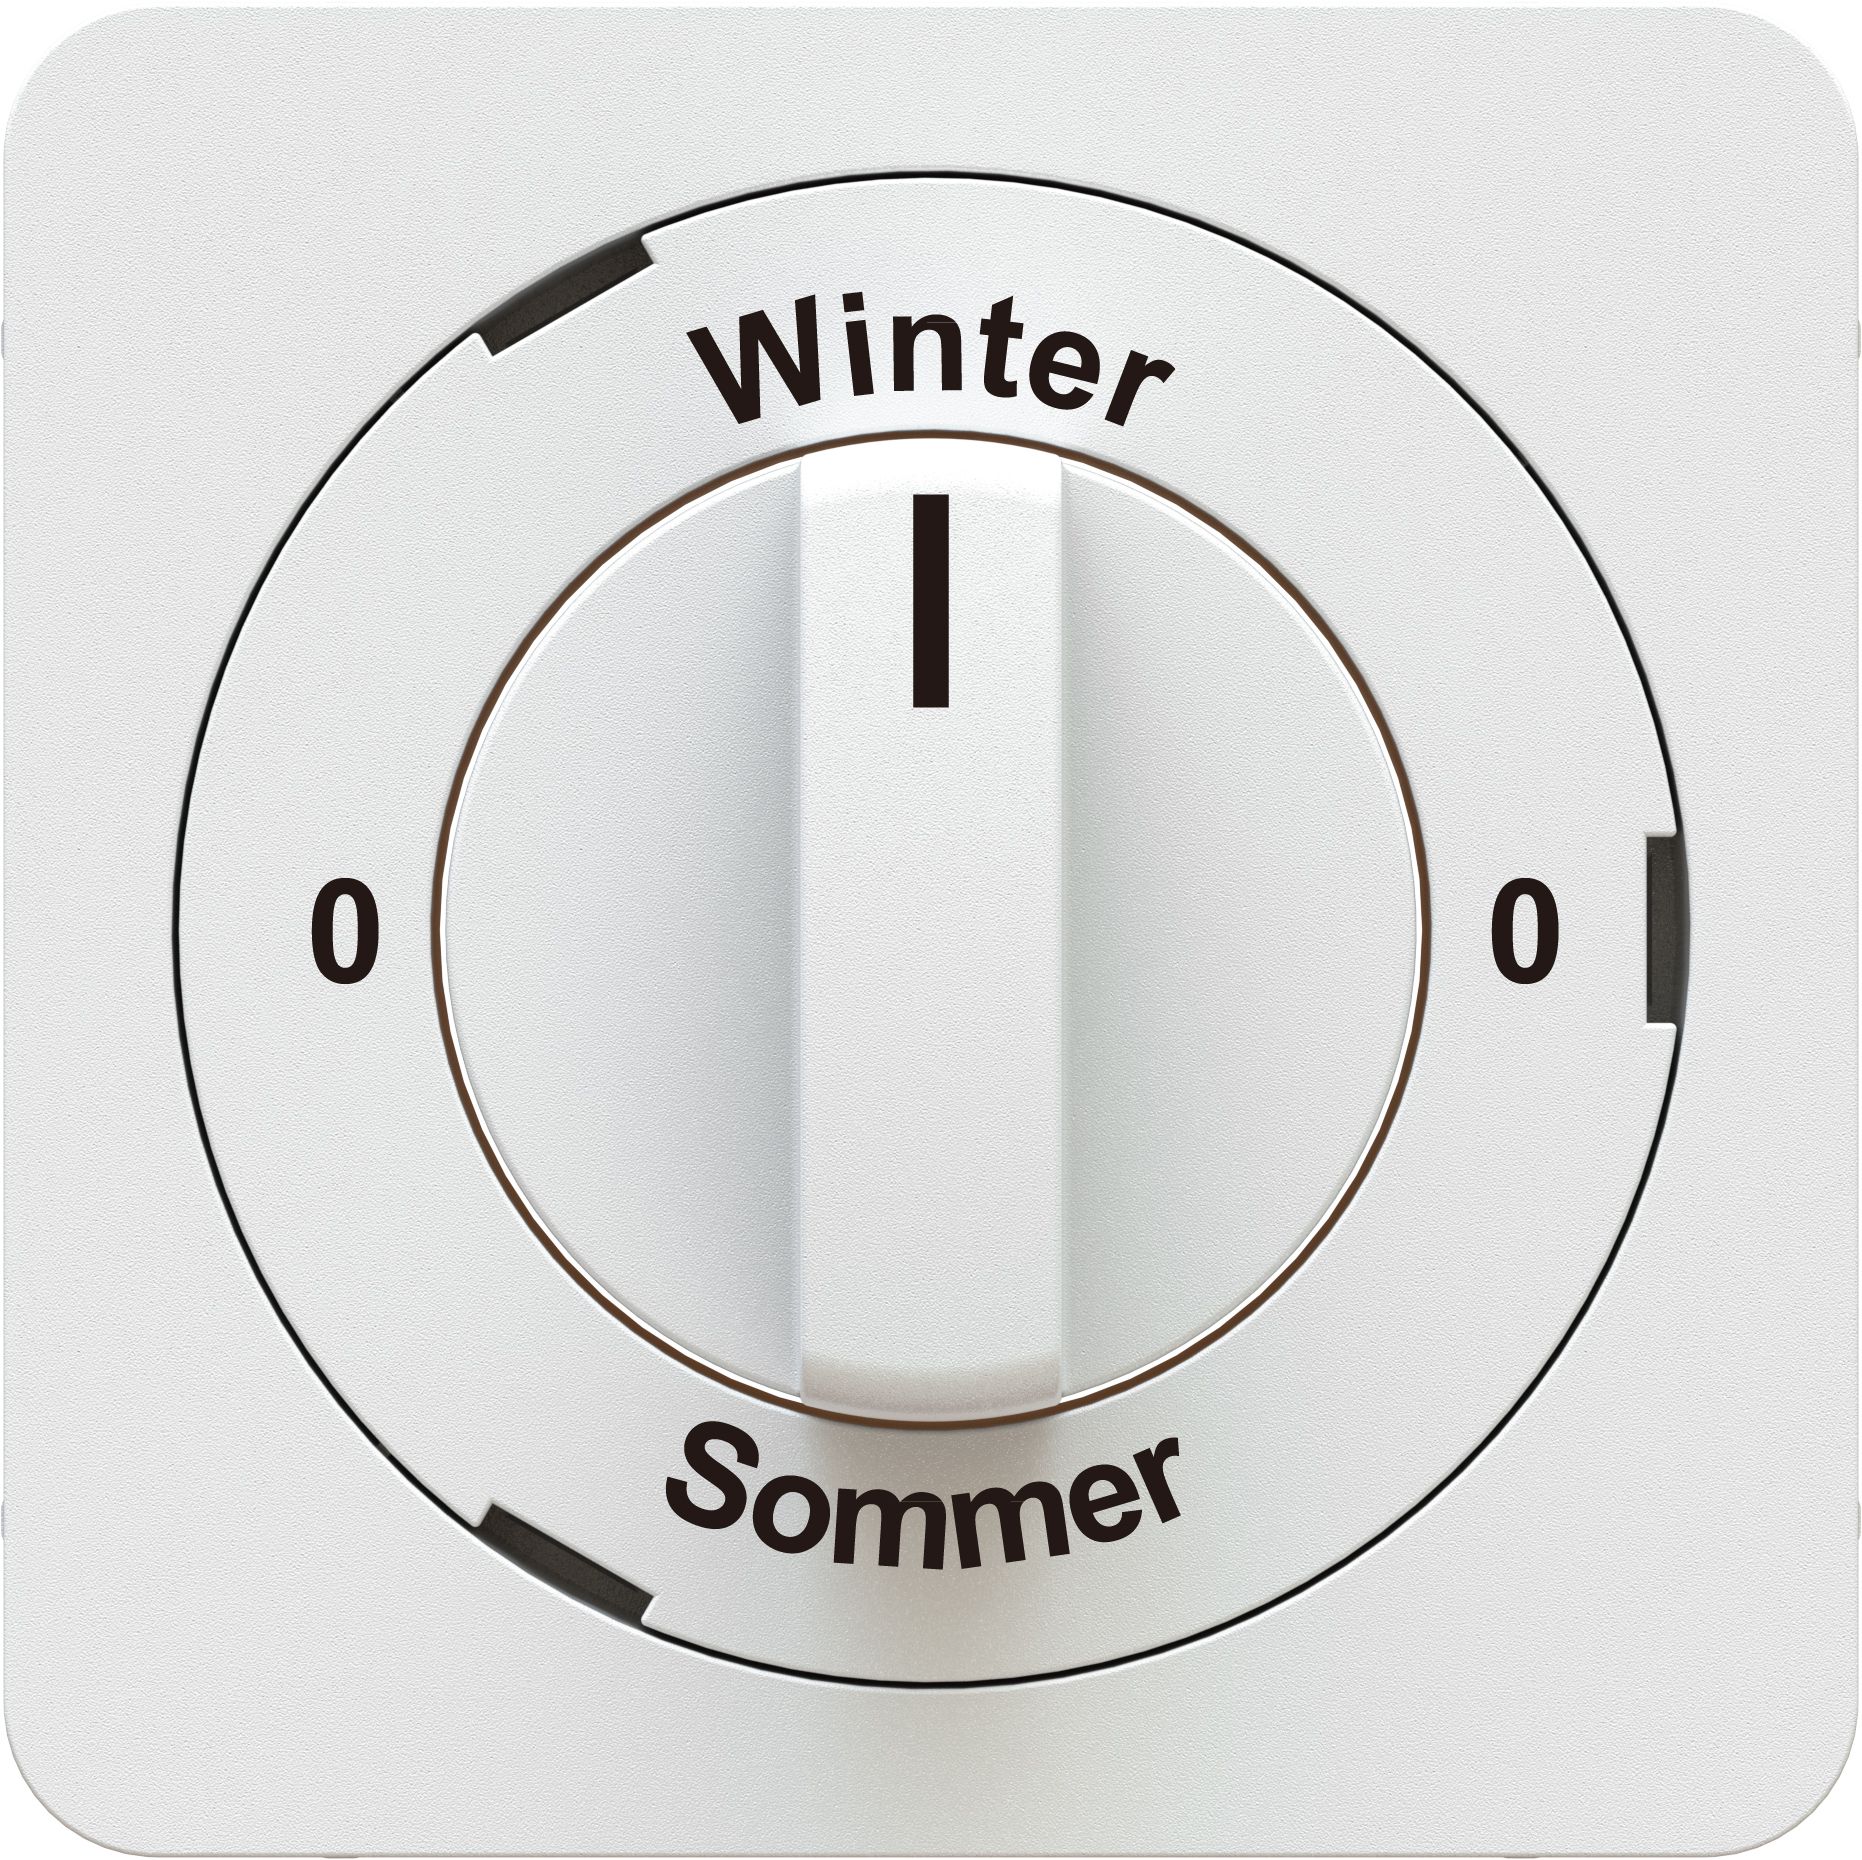 Dreh-/Schlüsselschalter 0-Winter-0-Sommer Frontplatte priamos ws